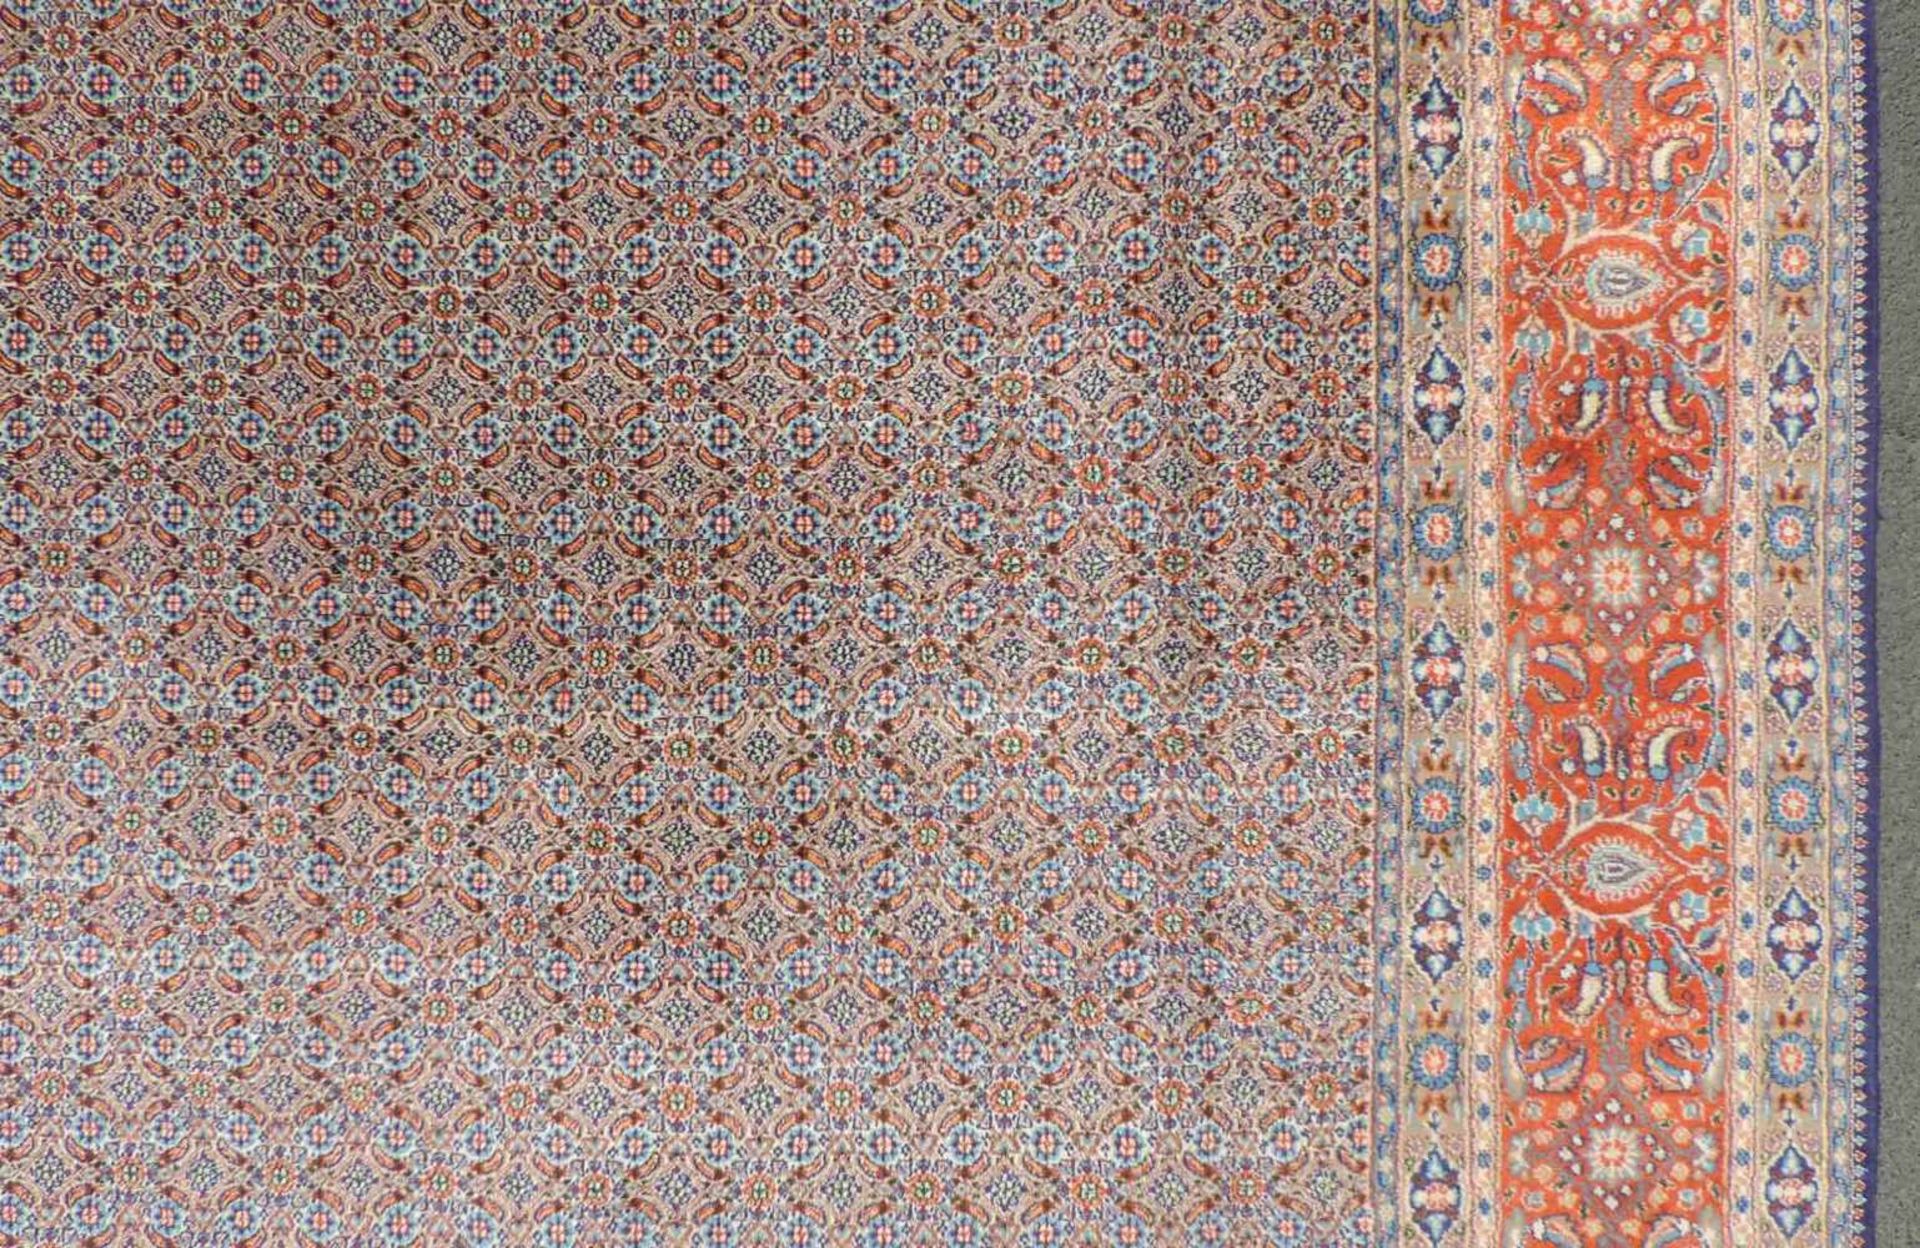 Moud Perserteppich. Iran. 406 cm x 300 cm. Handgeknüpft. Wolle auf Baumwolle. Zustand siehe Fotos. - Image 6 of 10